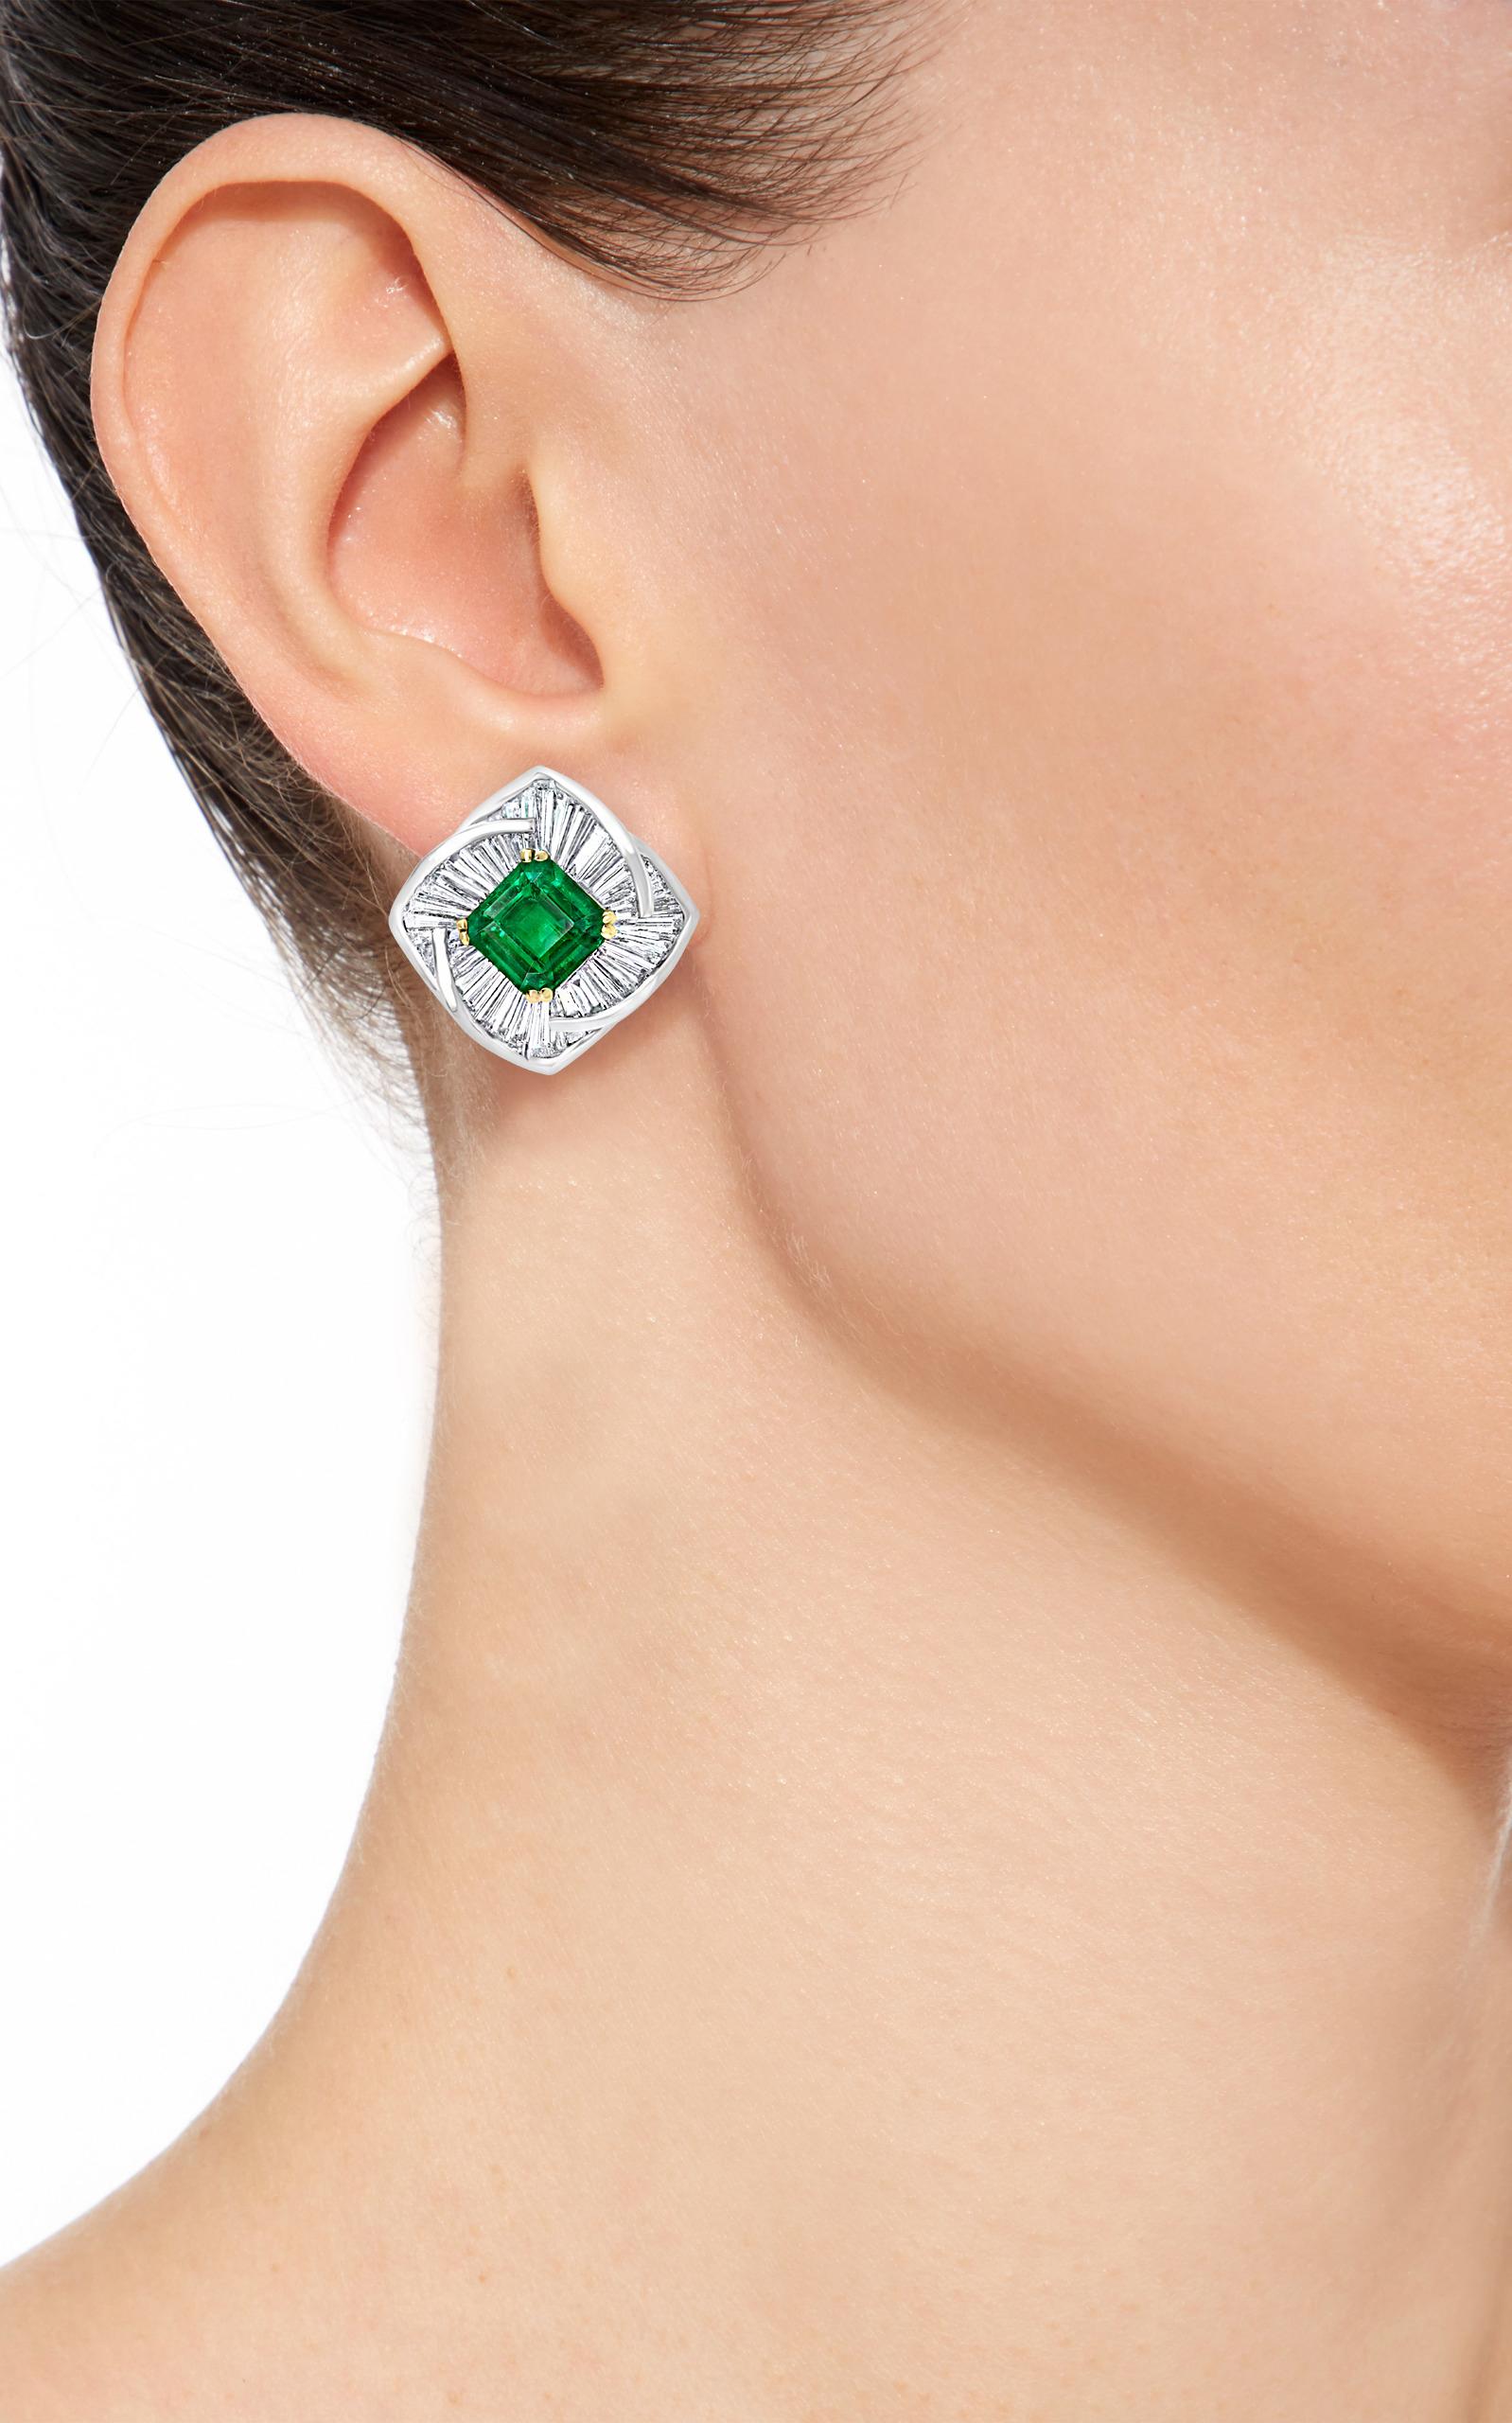 AGL Certified Minor 4ct Emerald Cut Colombian Emerald Diamond Earrings 18k Gold For Sale 4